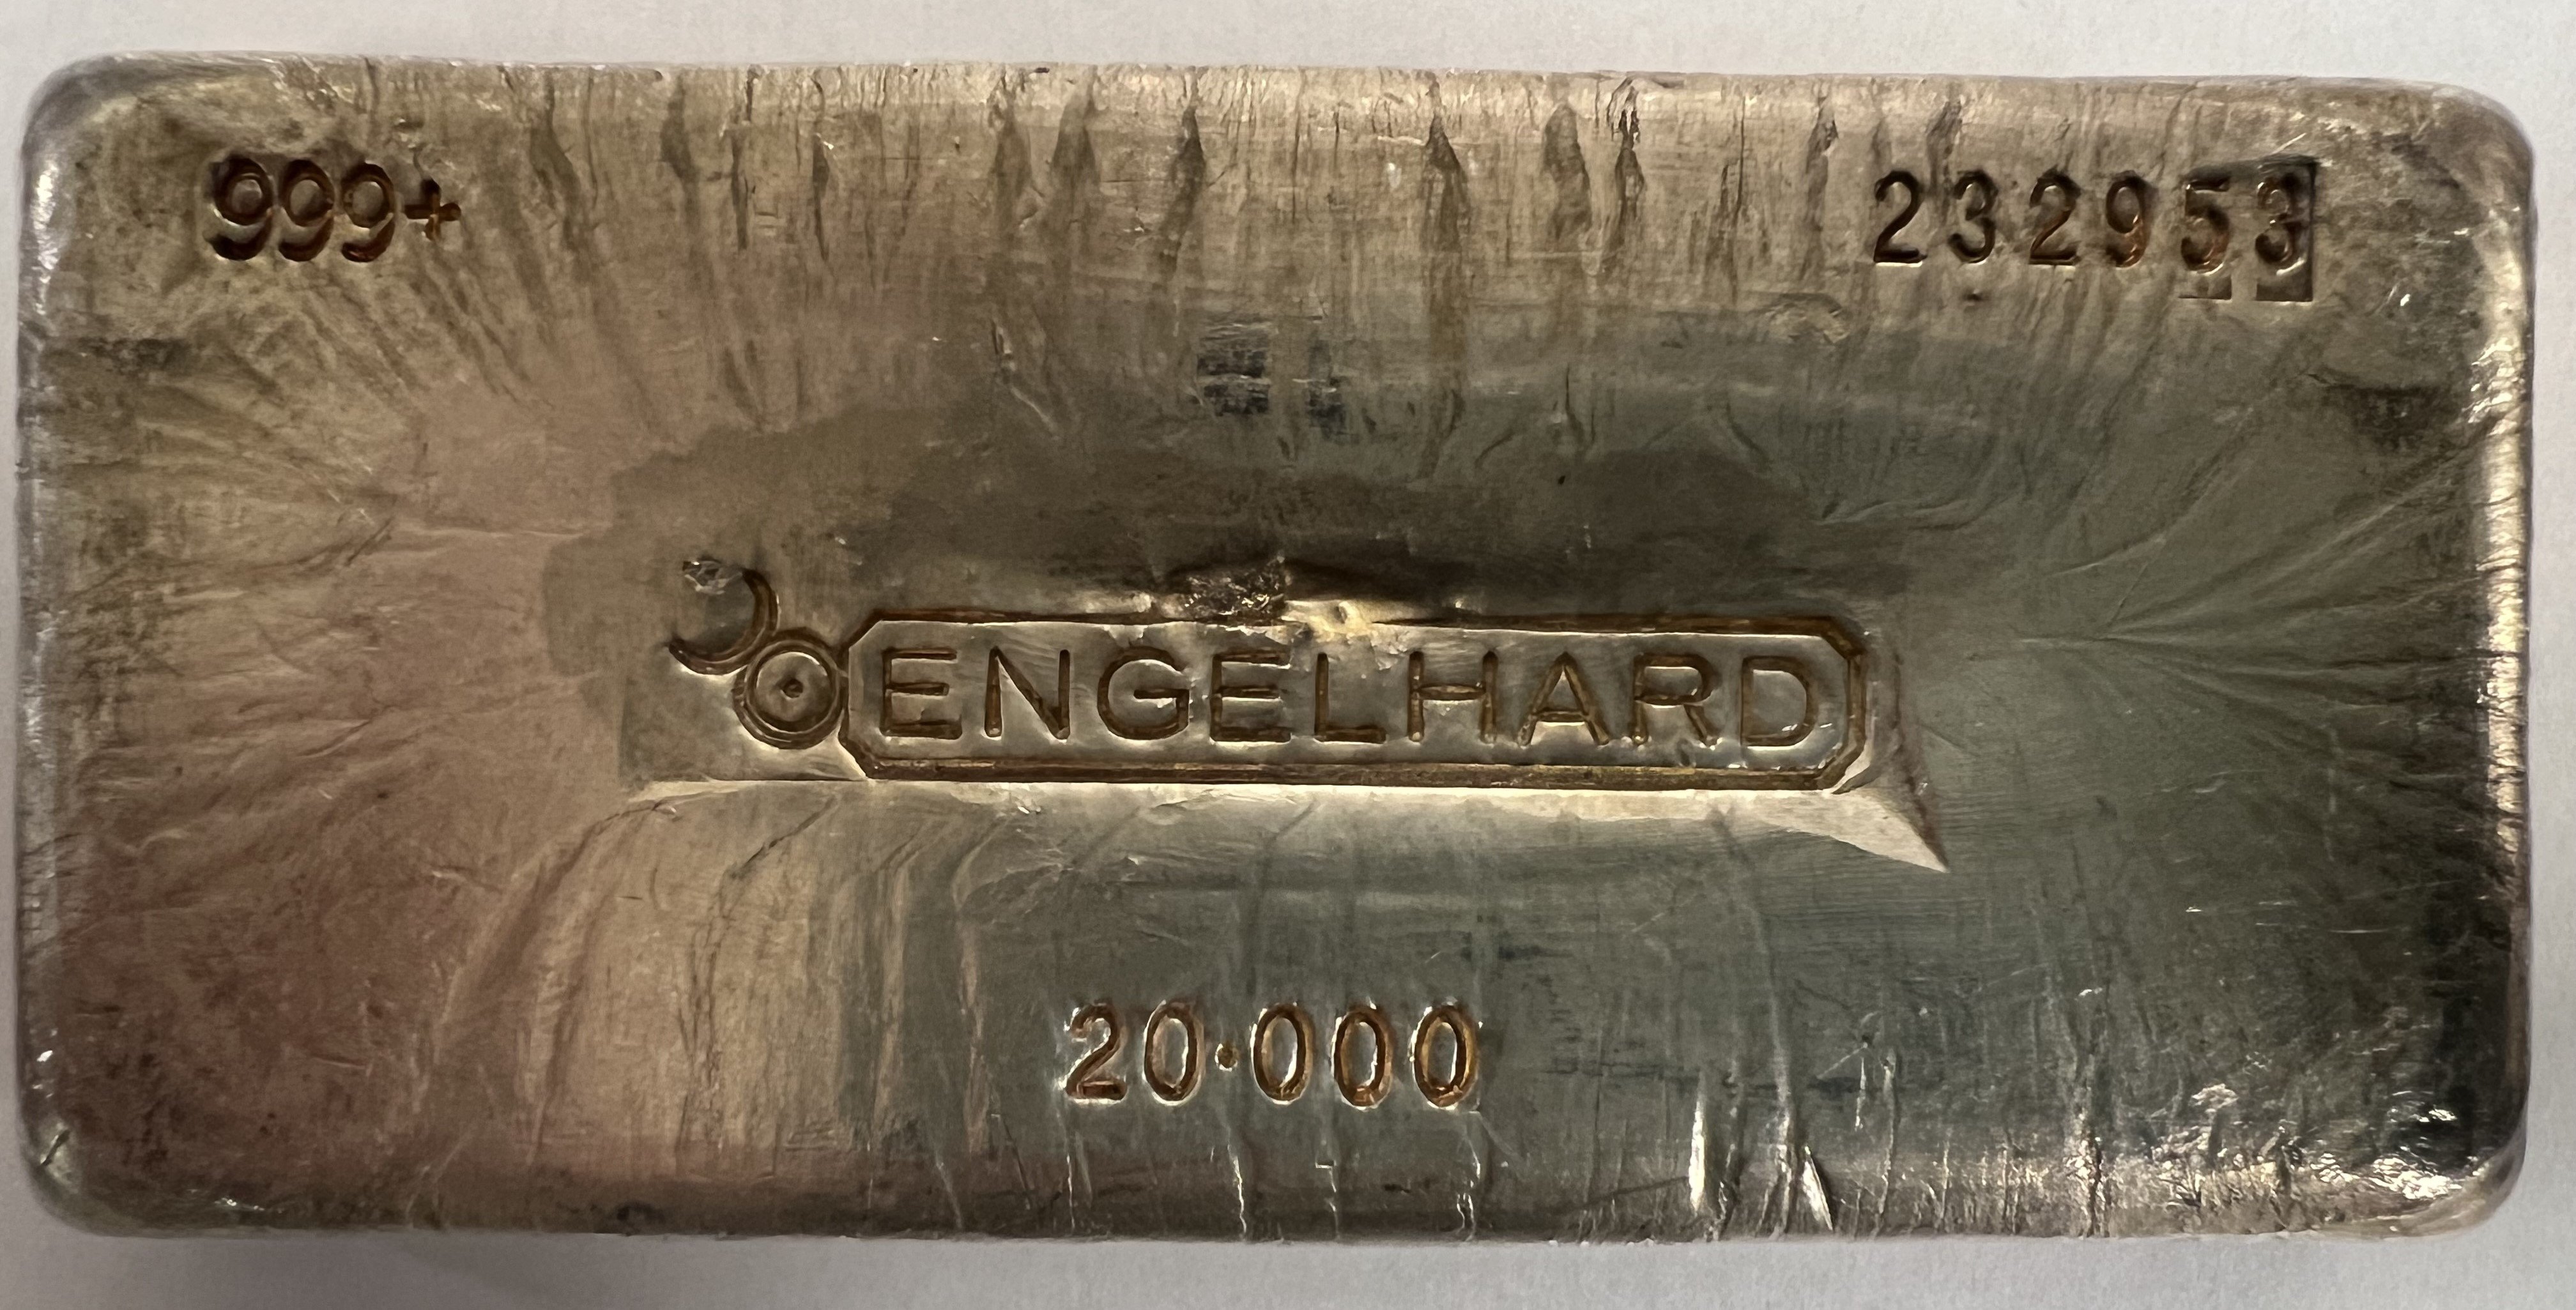 7th Series 20-oz Silver Engelhard Bar